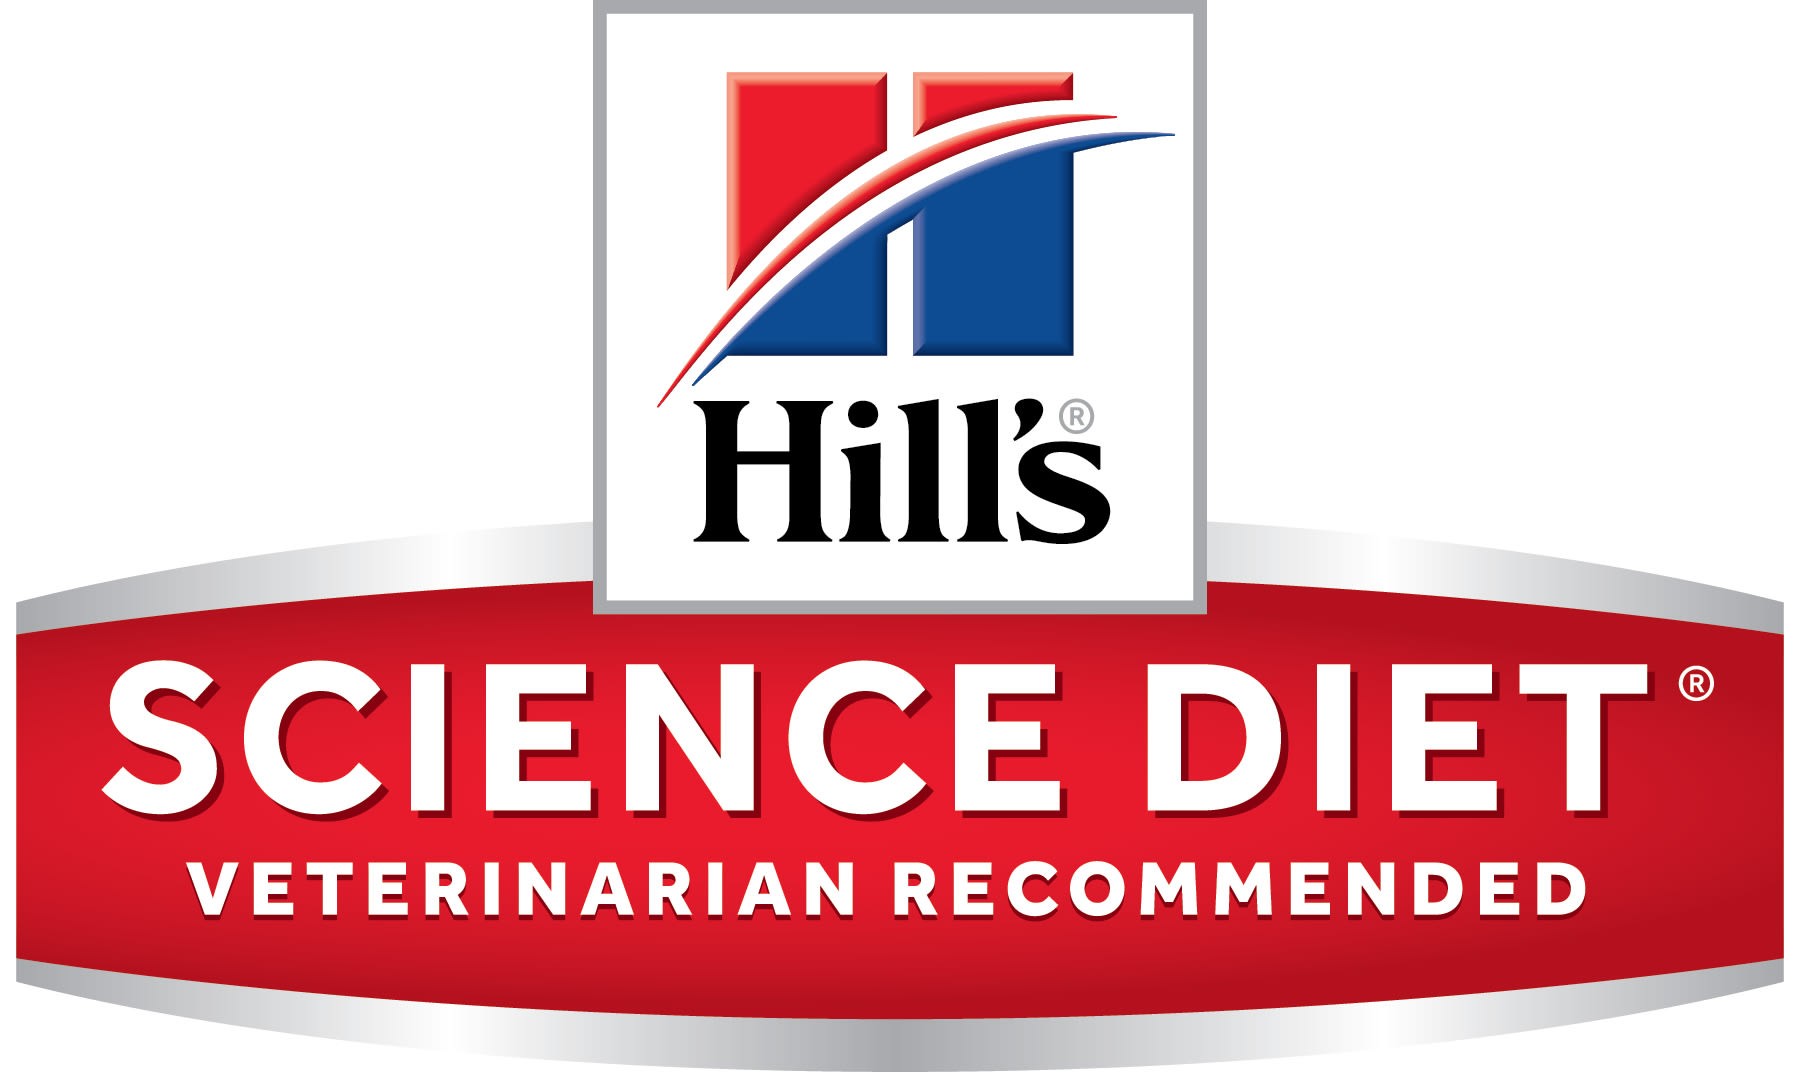 Hills science diet